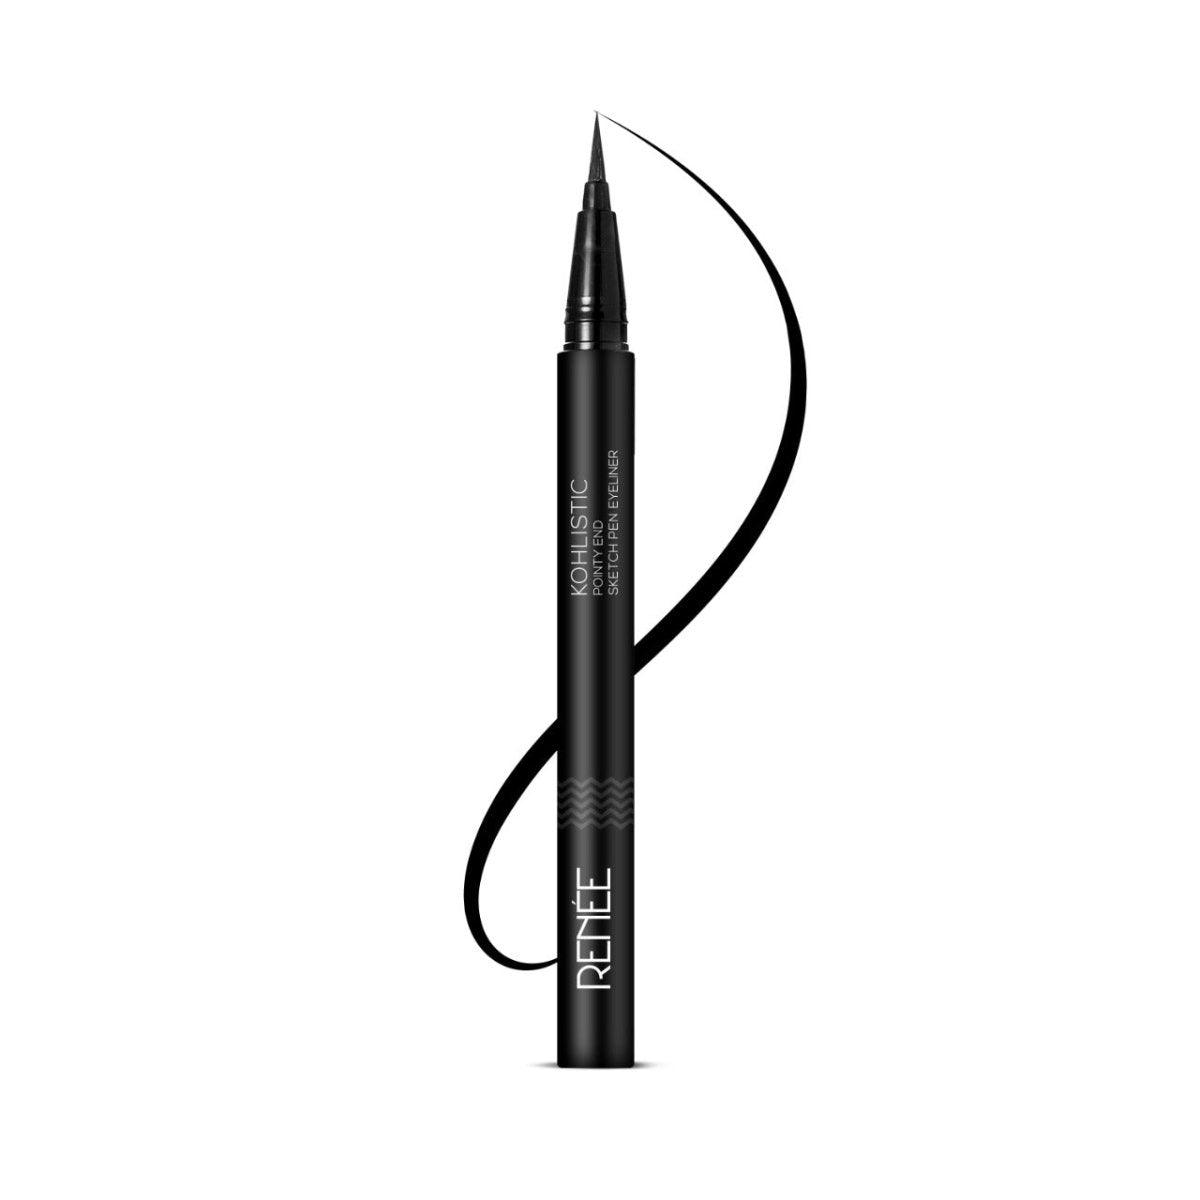 RENEE Combo of Golden Hour Eyeshadow & Sketch Pen Eyeliner - Renee Cosmetics